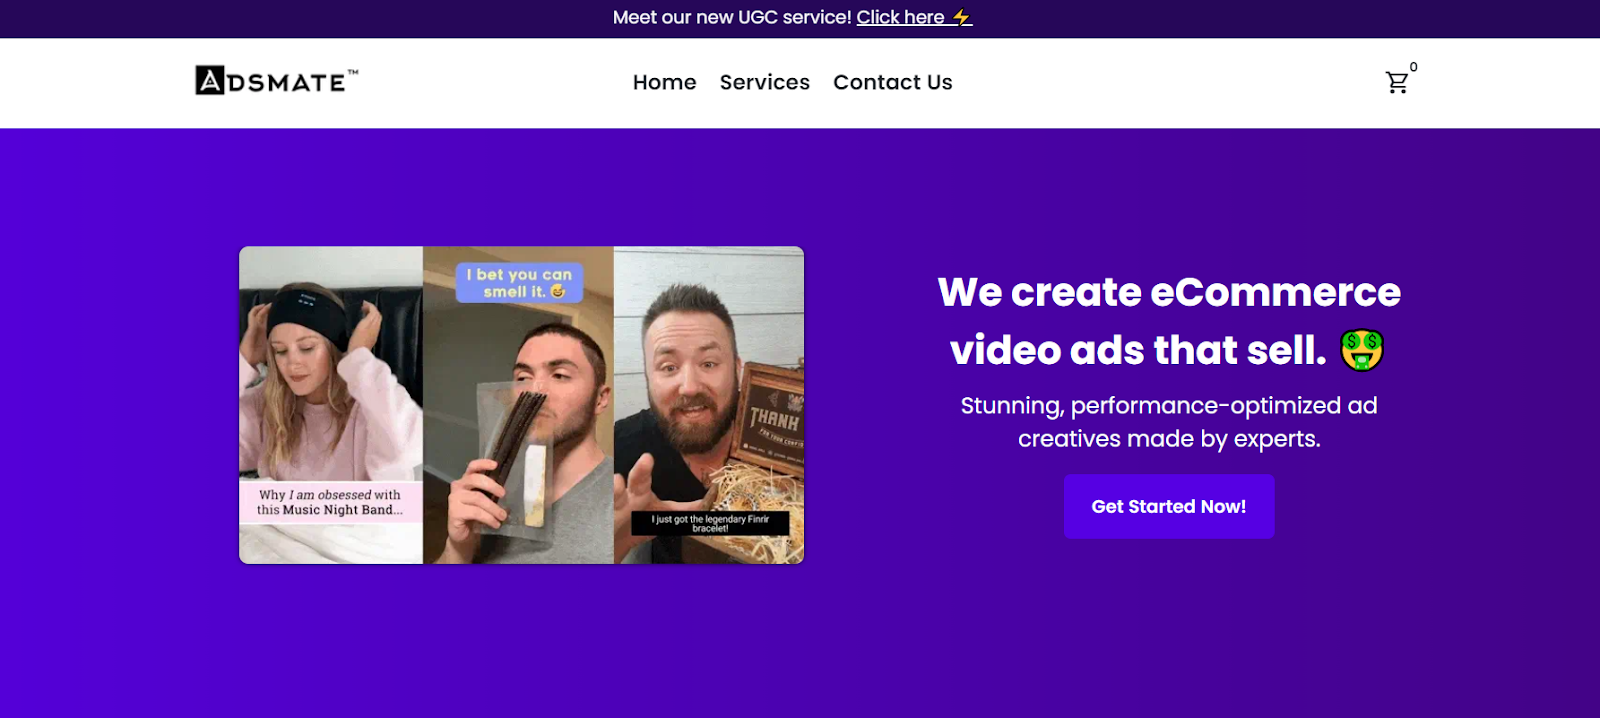 Adsmate video service ads